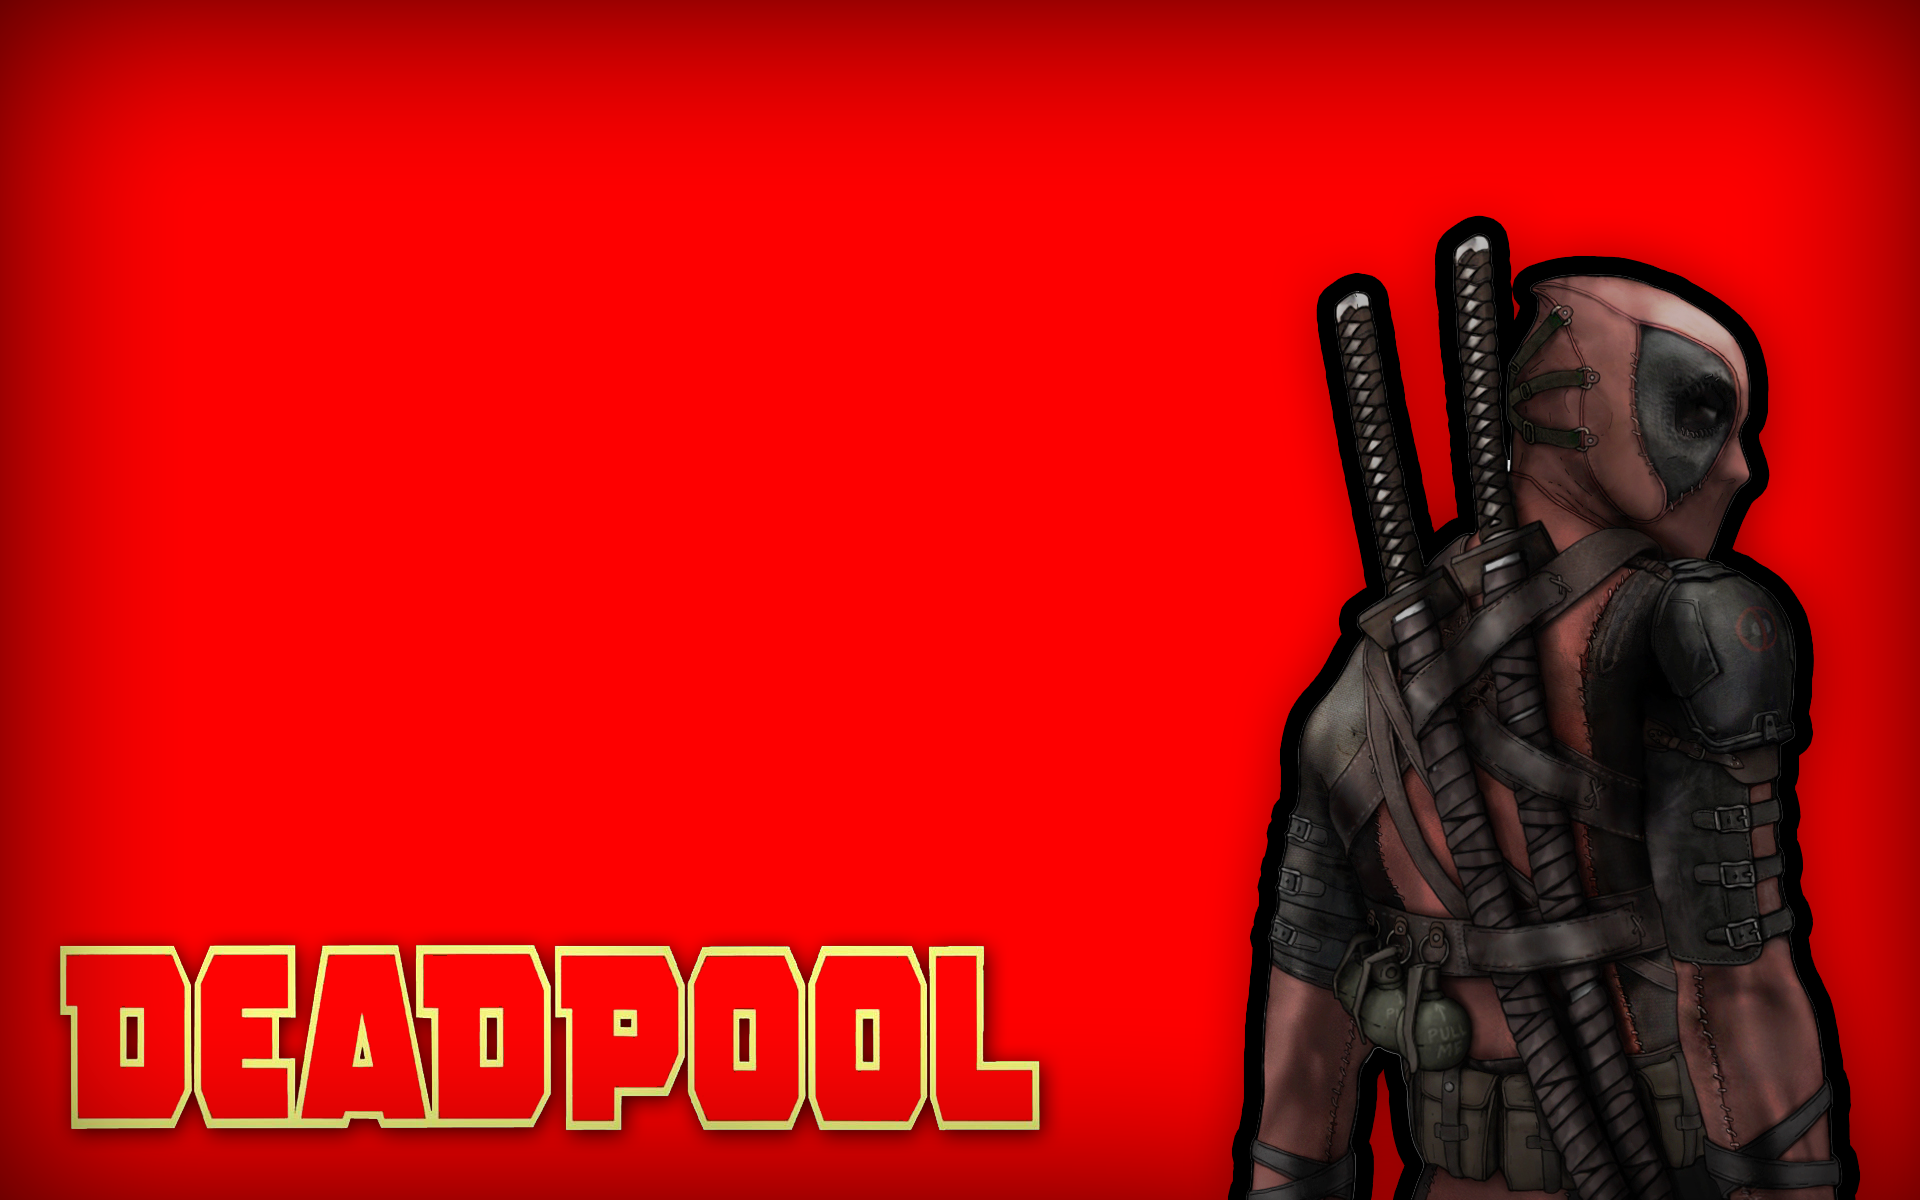 Deadpool Wade Wilson, Marvel Comics, simple background - desktop wallpaper